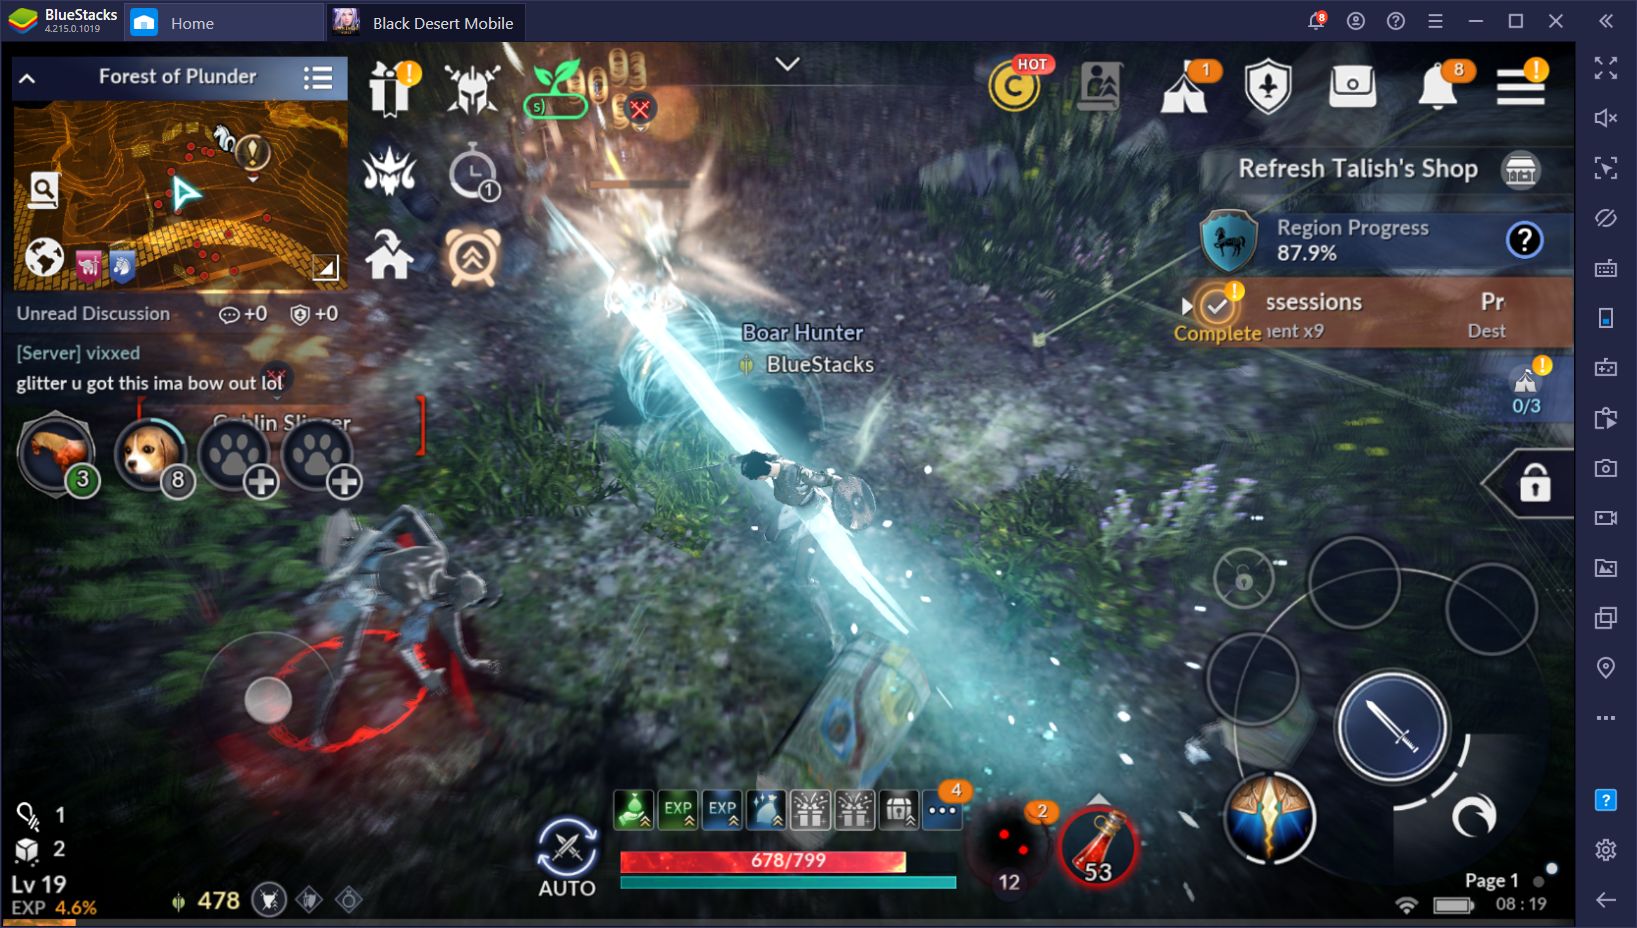 Black Desert Mobile Update Brings the Awakening System to the Popular MMORPG